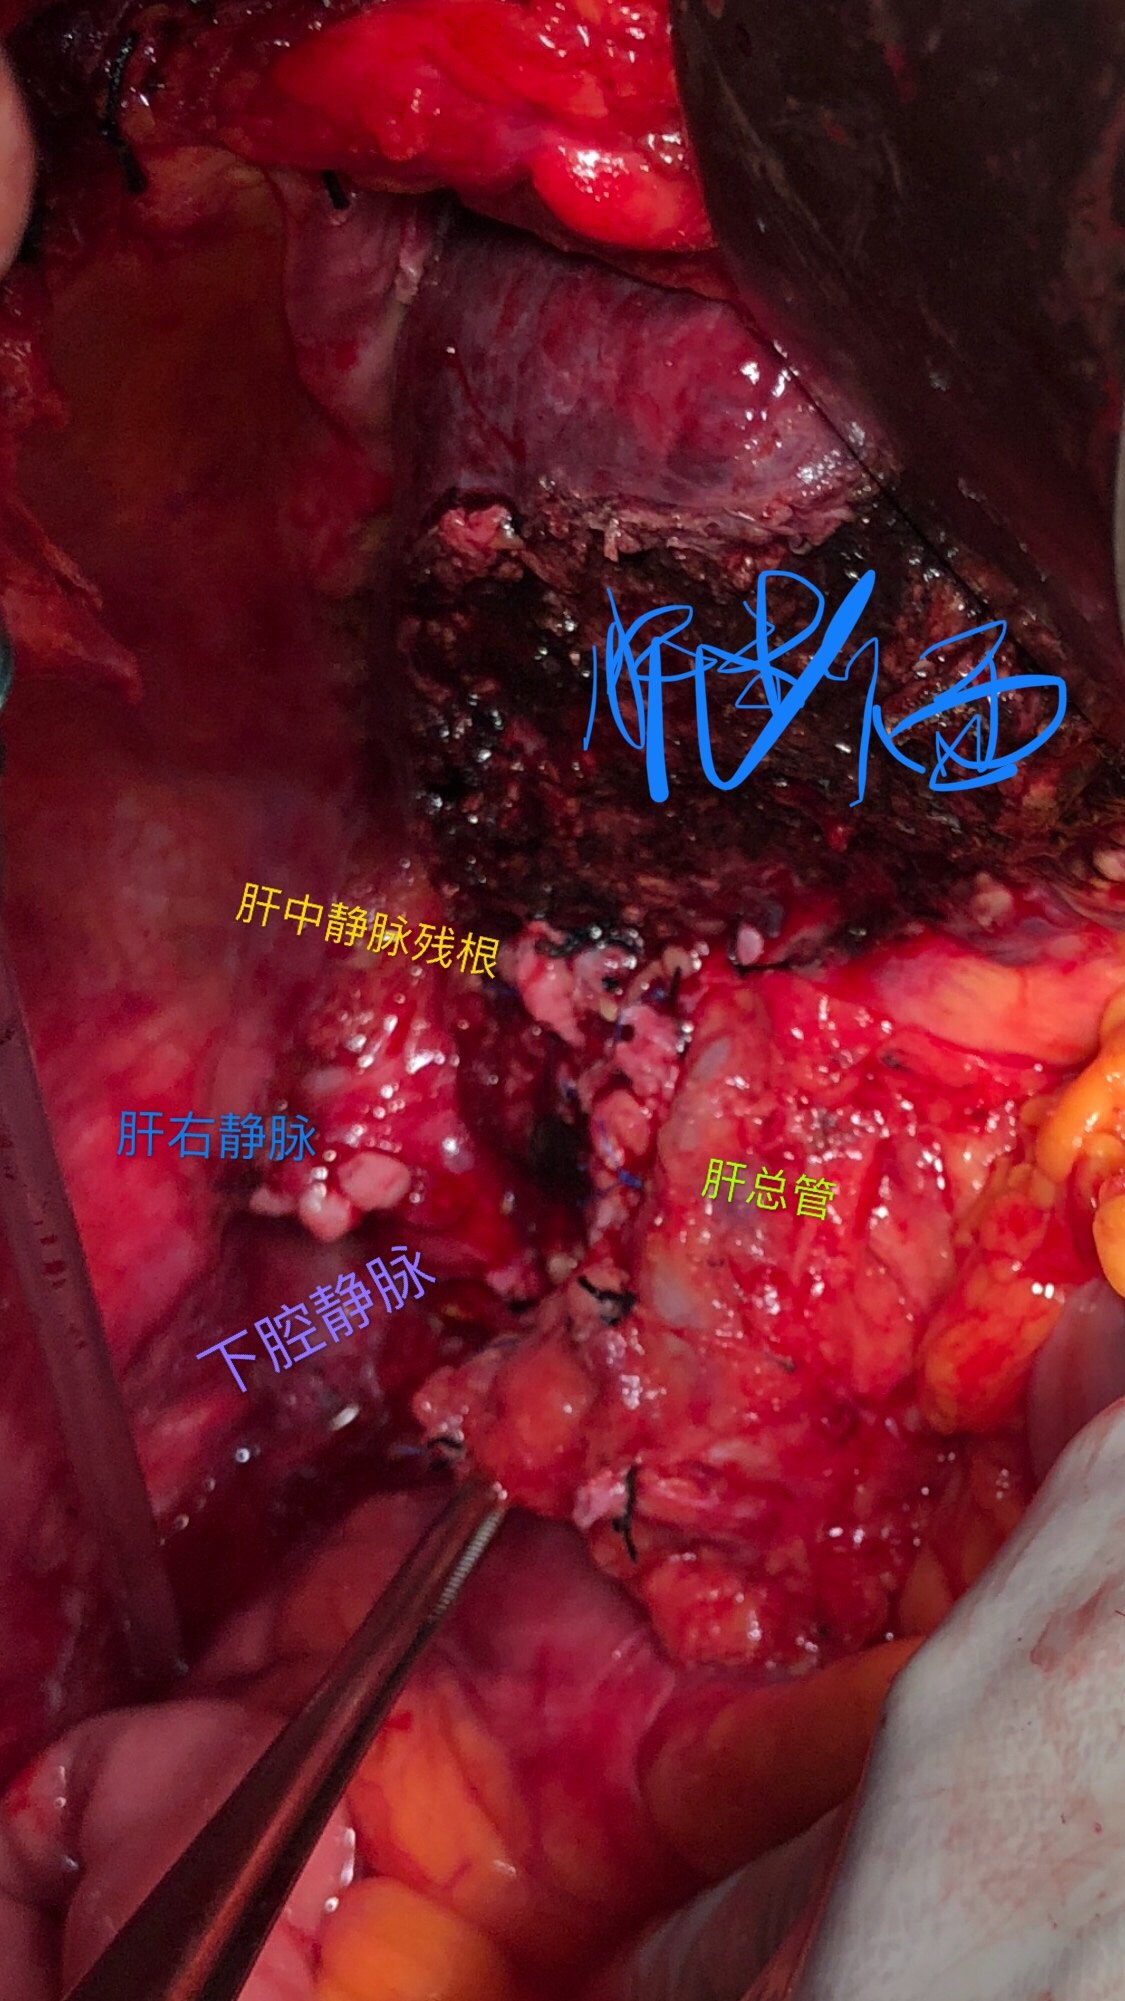 晚期巨块肝癌手术:b级肝功门静脉肝中肝右静脉癌栓右半肝切除